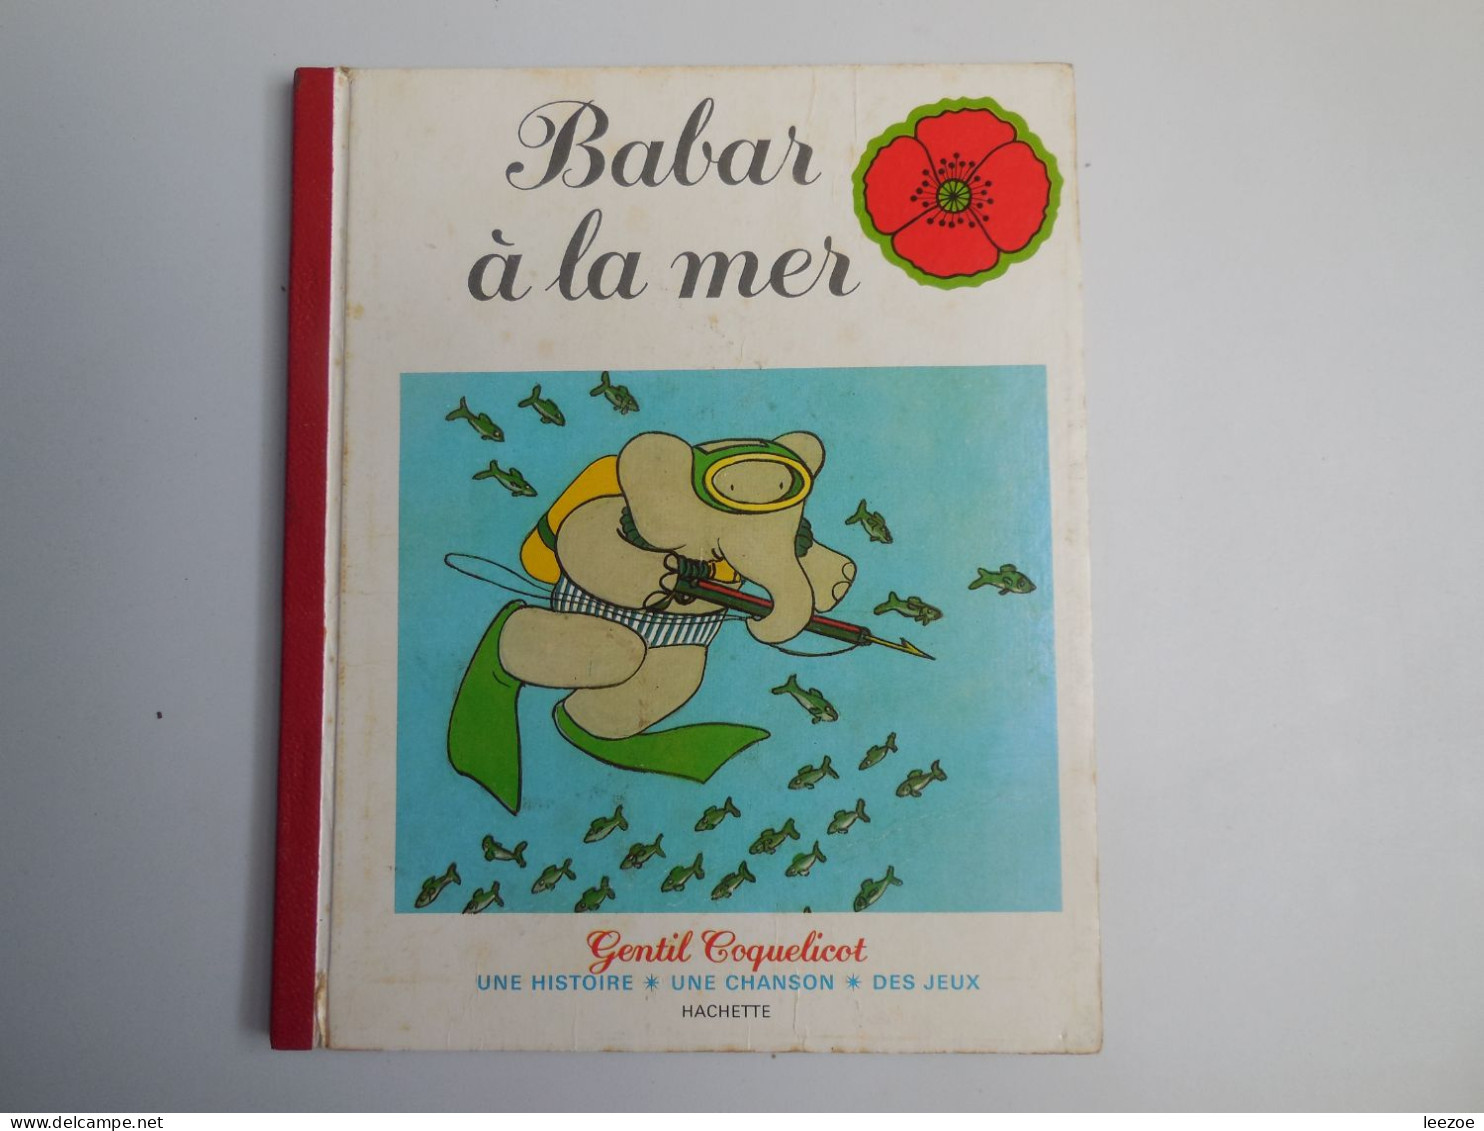 LIVRE BABAR A LA MER, Collection Gentil Coquelicot, 1 Histoire*1 Chanson * Des Jeux 1978...(ref 01.23N5/) - Hachette